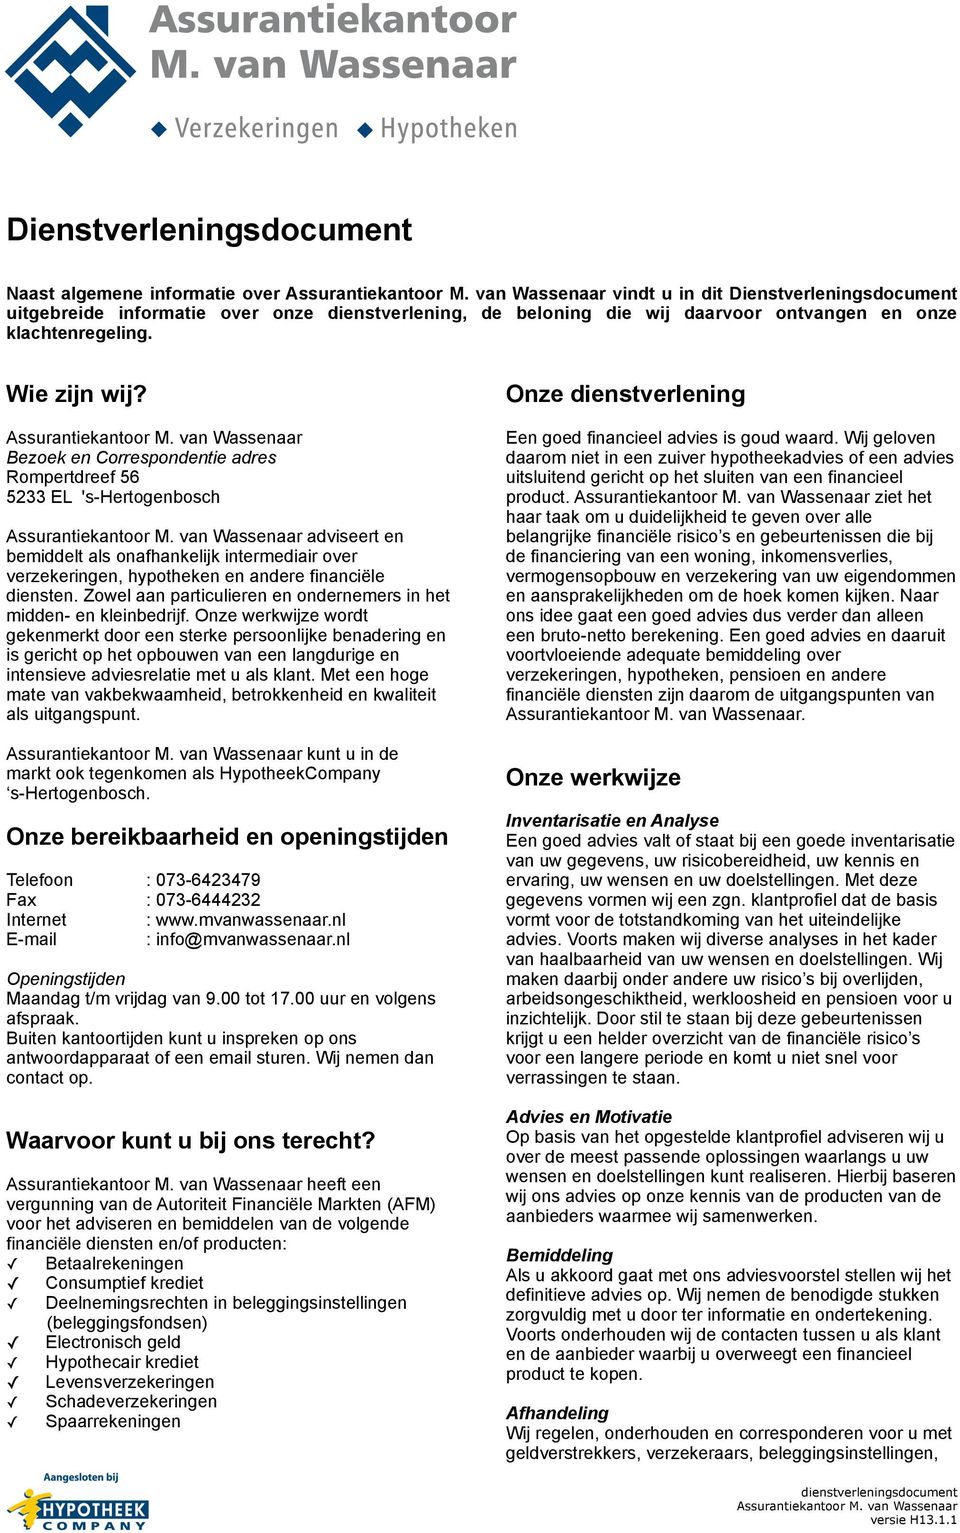 Bezoek en Correspondentie adres Rompertdreef 56 5233 EL 's-hertogenbosch adviseert en bemiddelt als onafhankelijk intermediair over verzekeringen, hypotheken en andere financiële diensten.